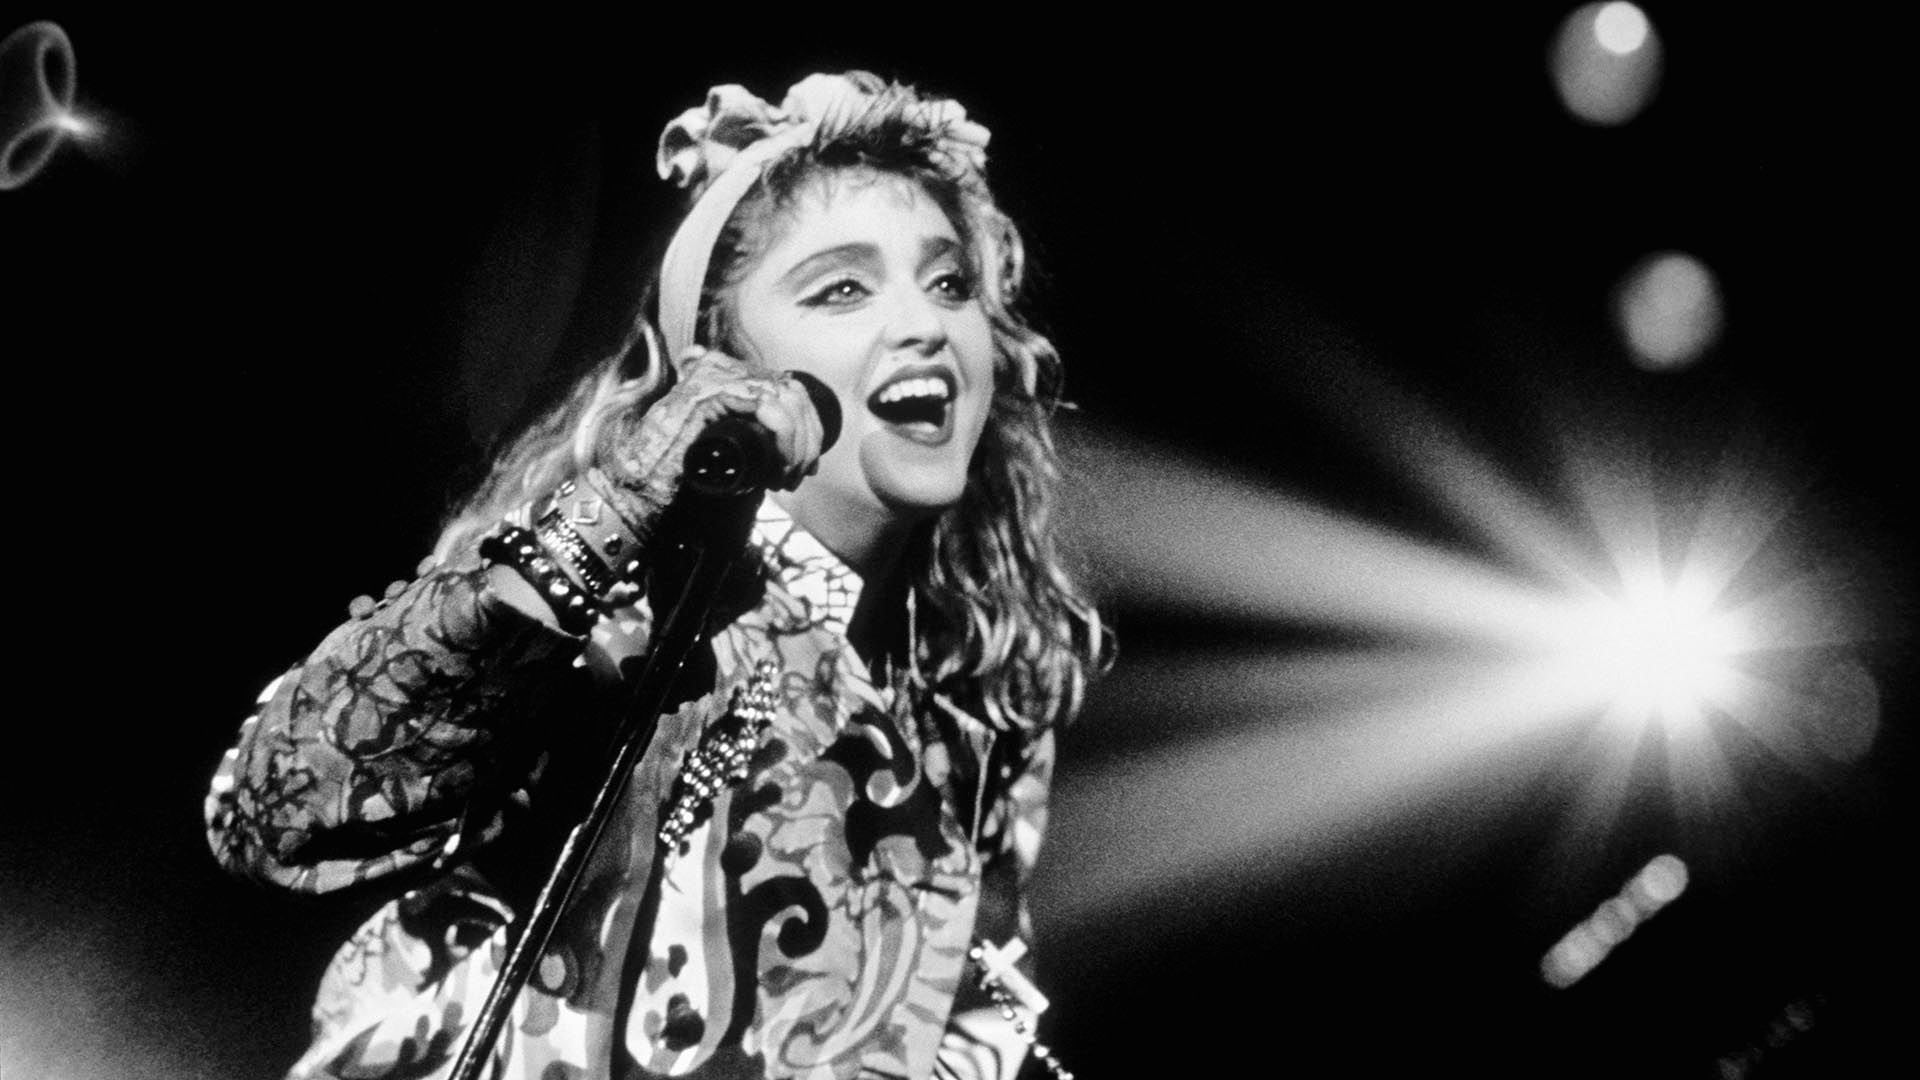 Madonna en el escenario en Nueva York (Photo by Bill Marino/Sygma via Getty Images)